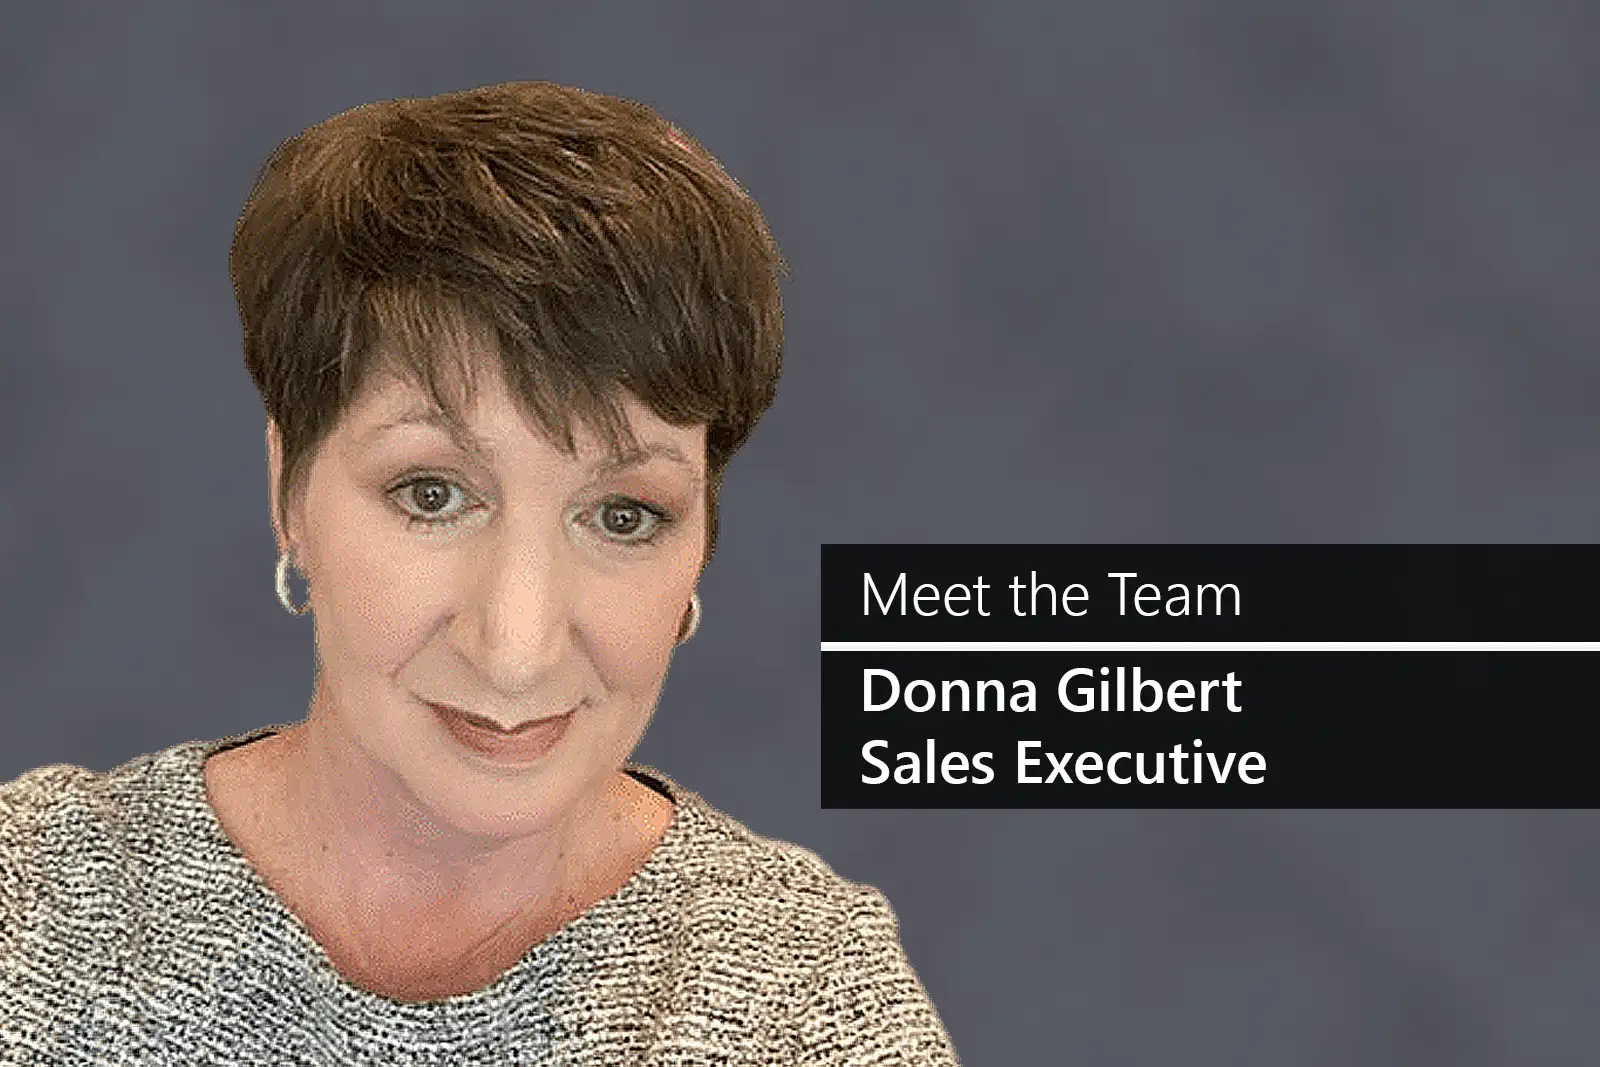 Meet the Team - Donna Gilbert